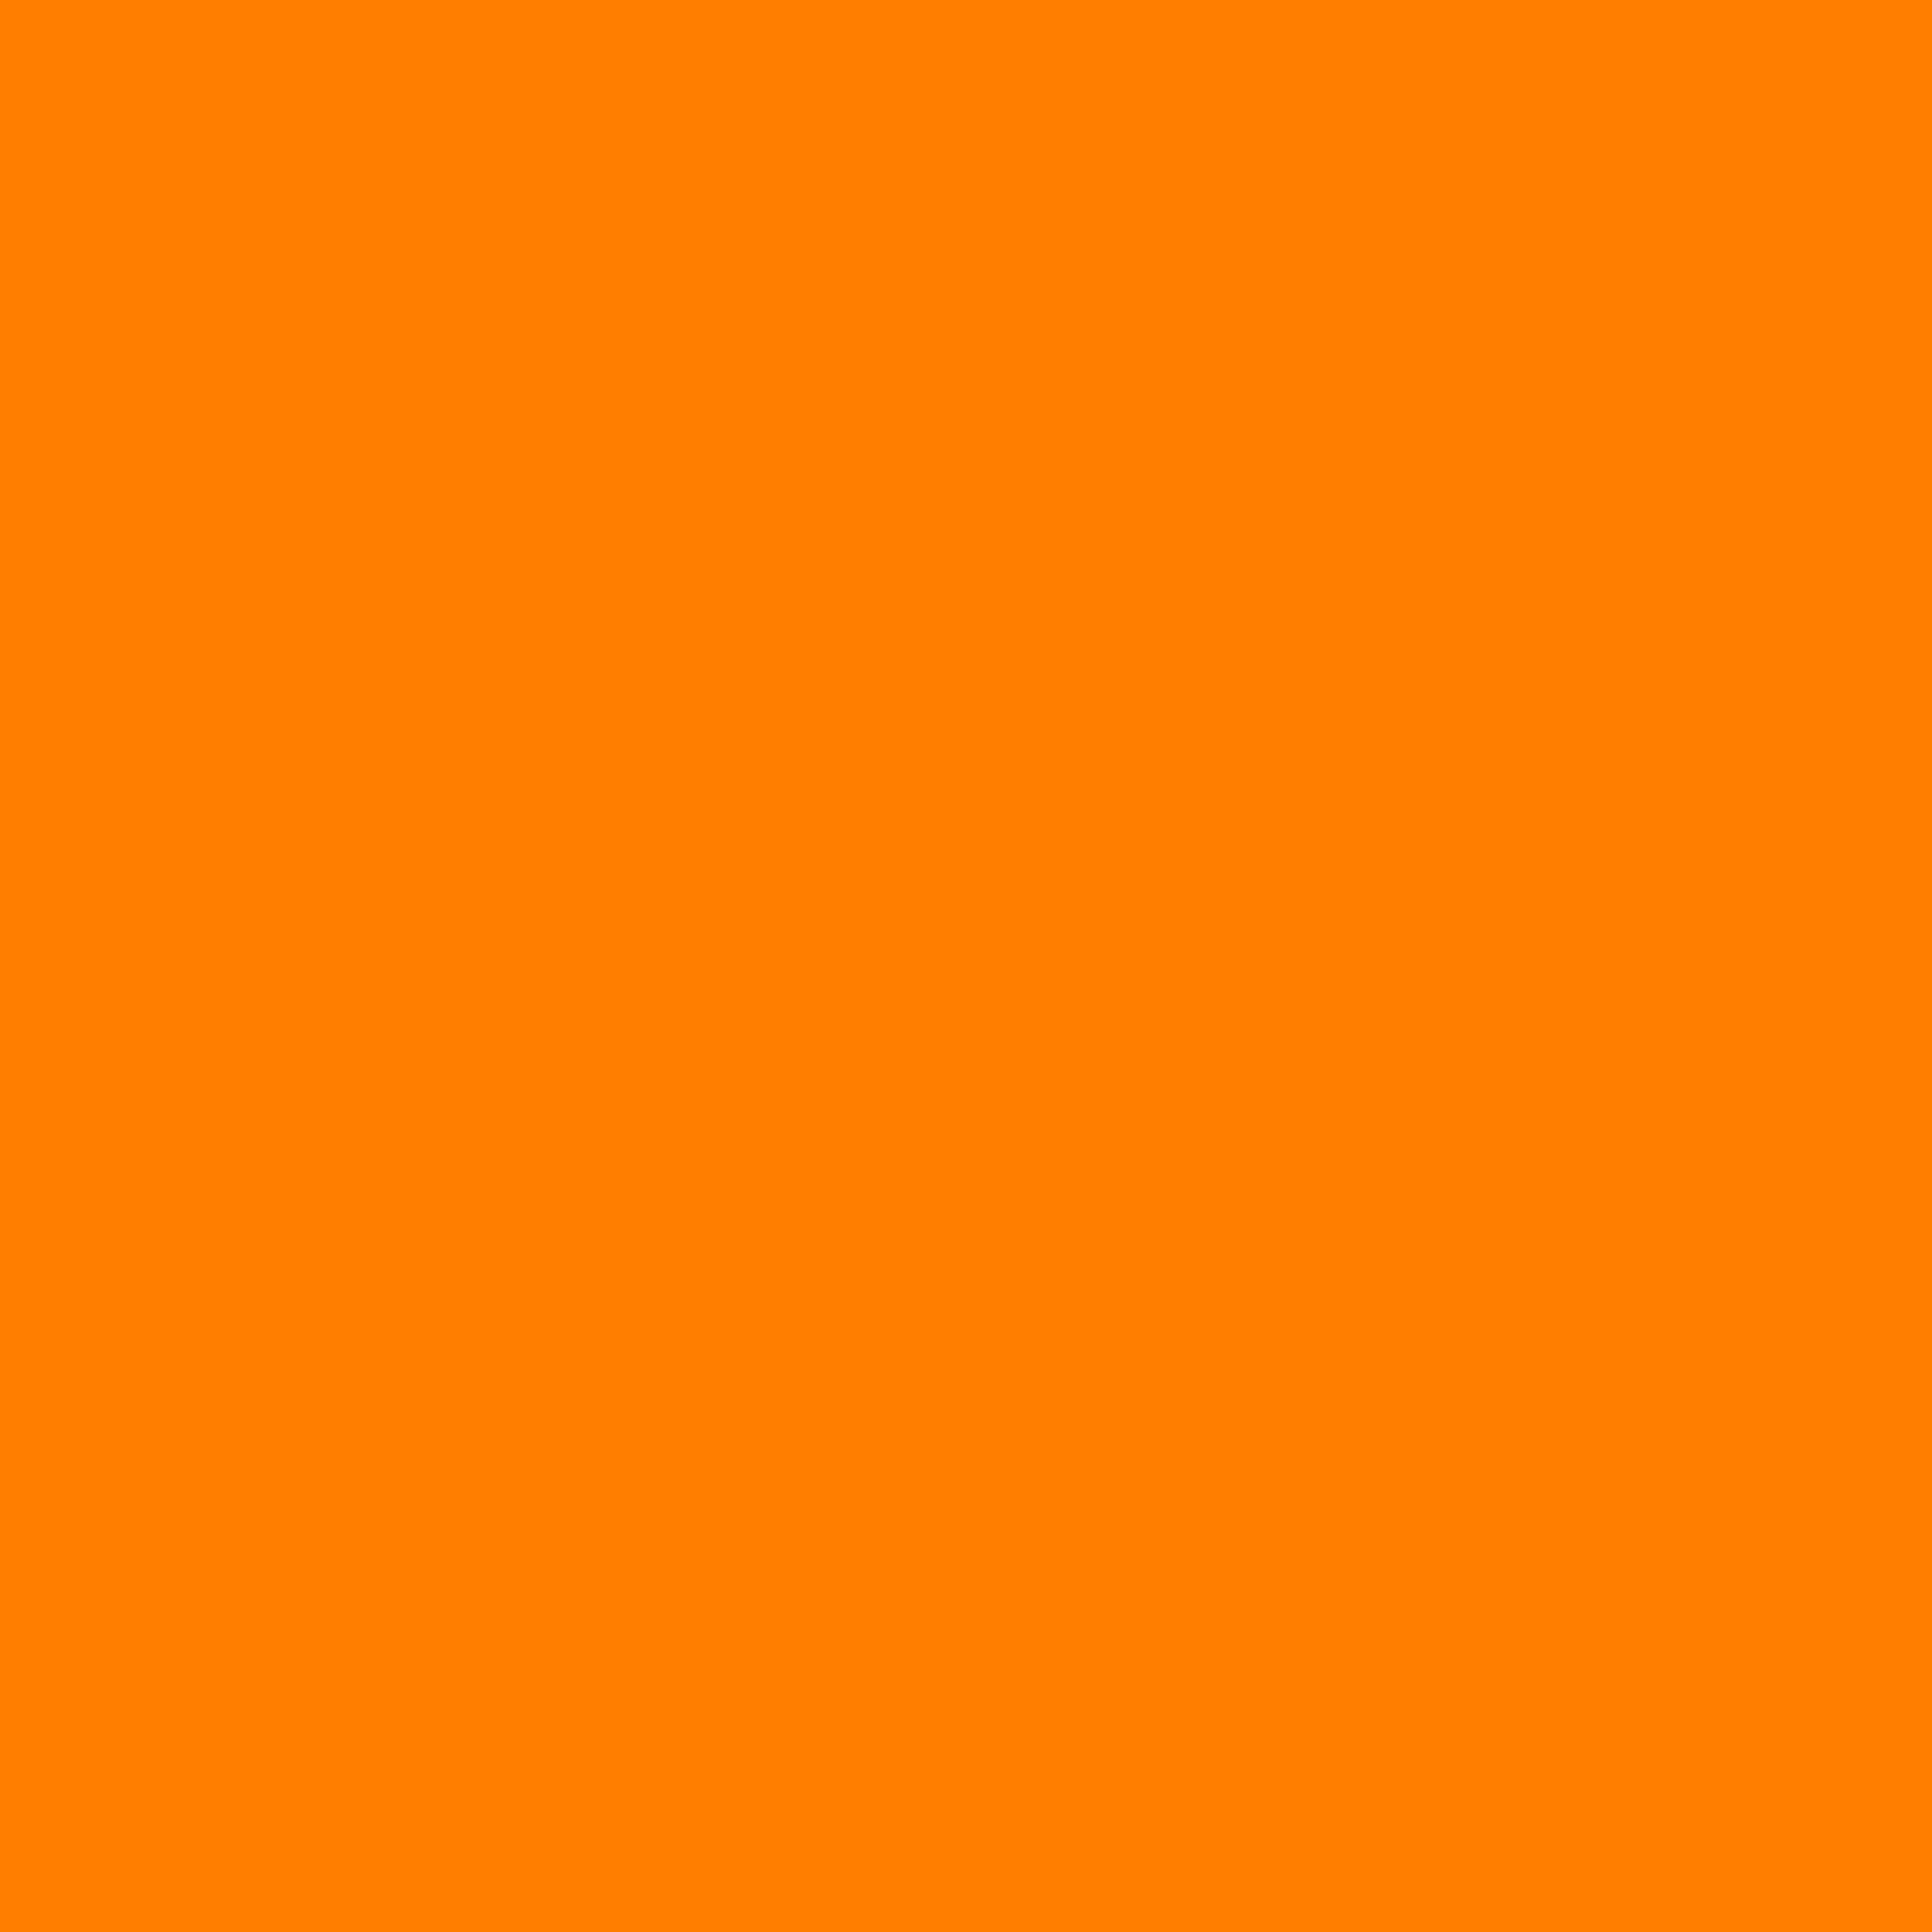 2048x2048 Amber Orange Solid Color Background